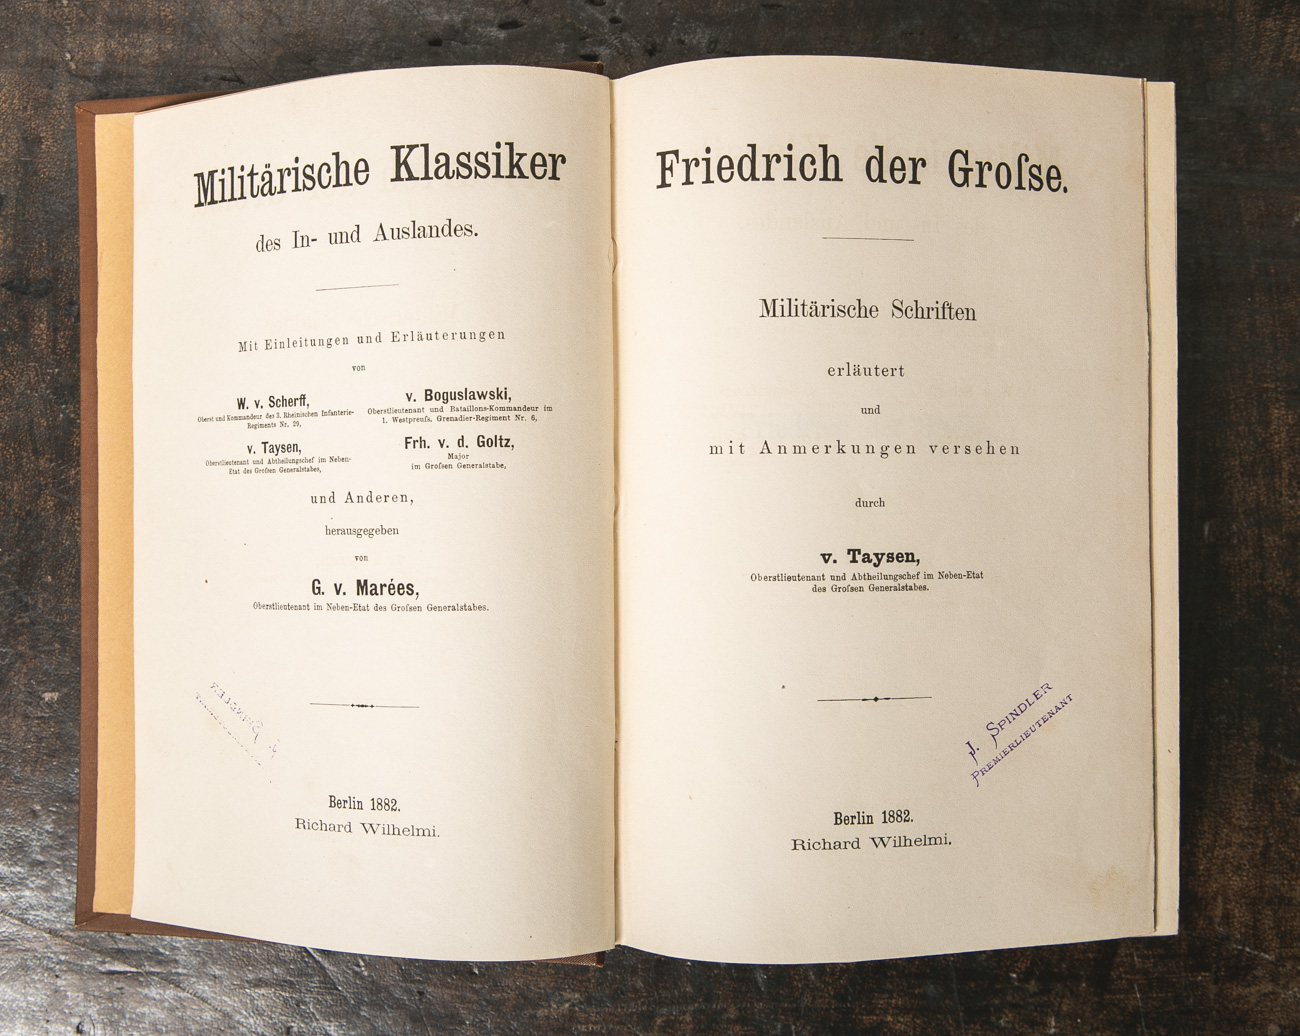 Marées, G. v. (Hrsg.), "Militärische Klassiker des In- und Auslandes: Friedrich der - Bild 2 aus 2